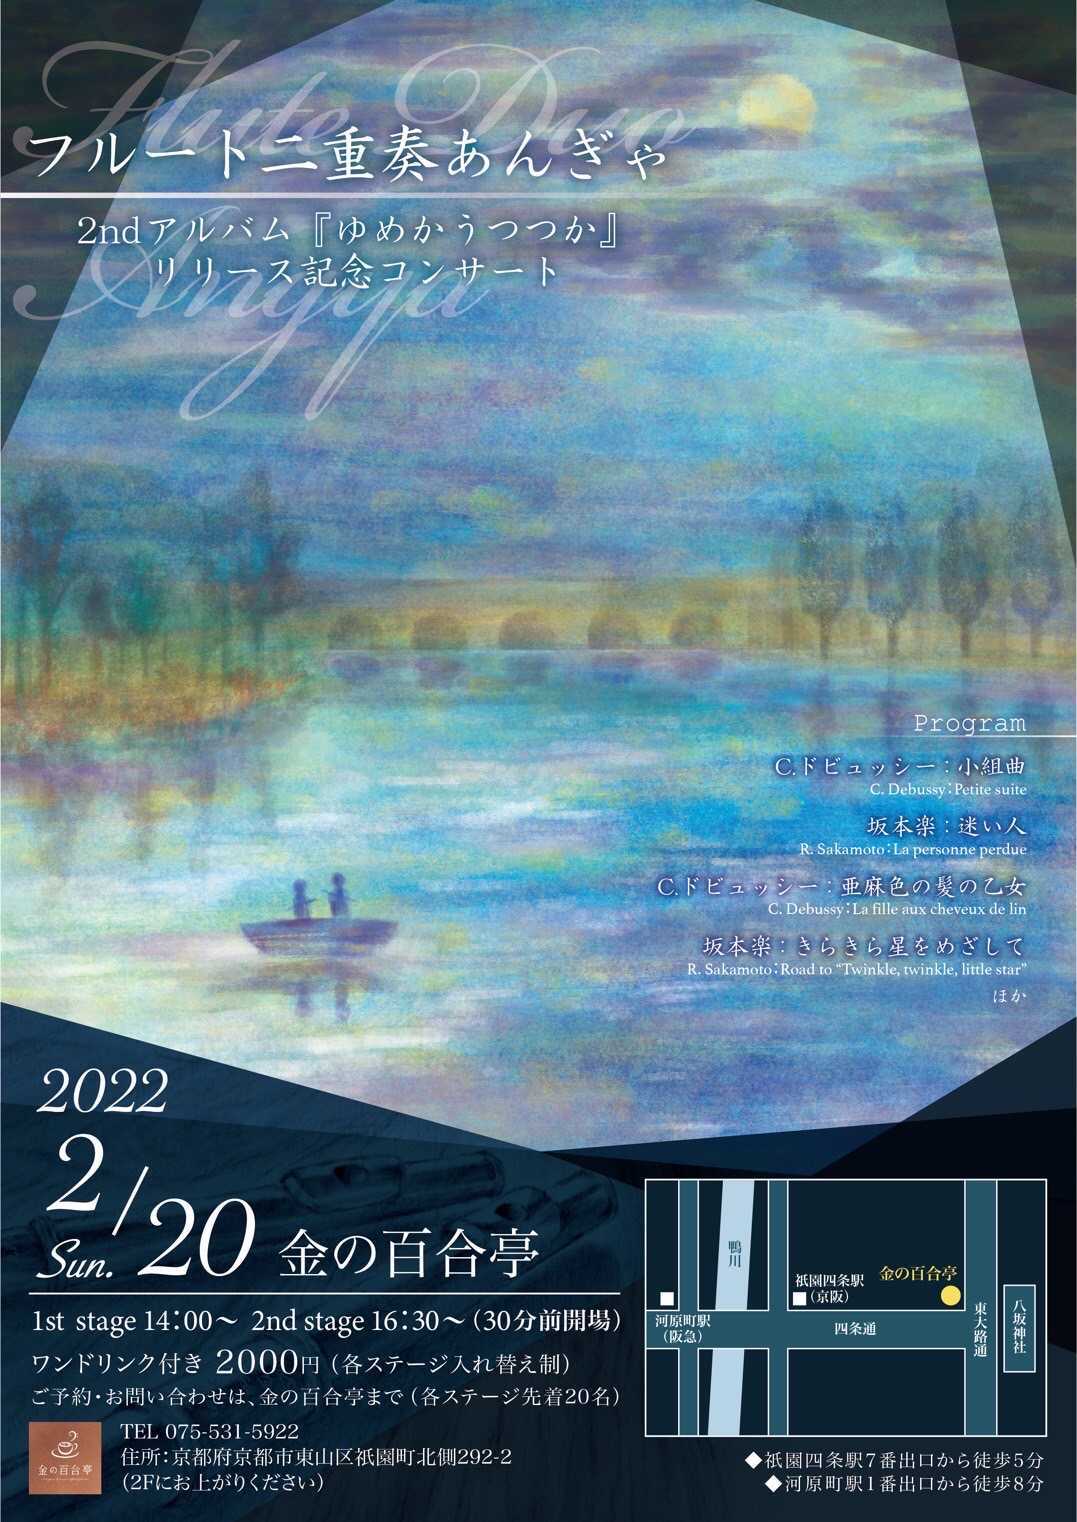 フルート二重奏・あんぎゃ 2ndアルバム『ゆめかうつつか』リリース記念コンサート